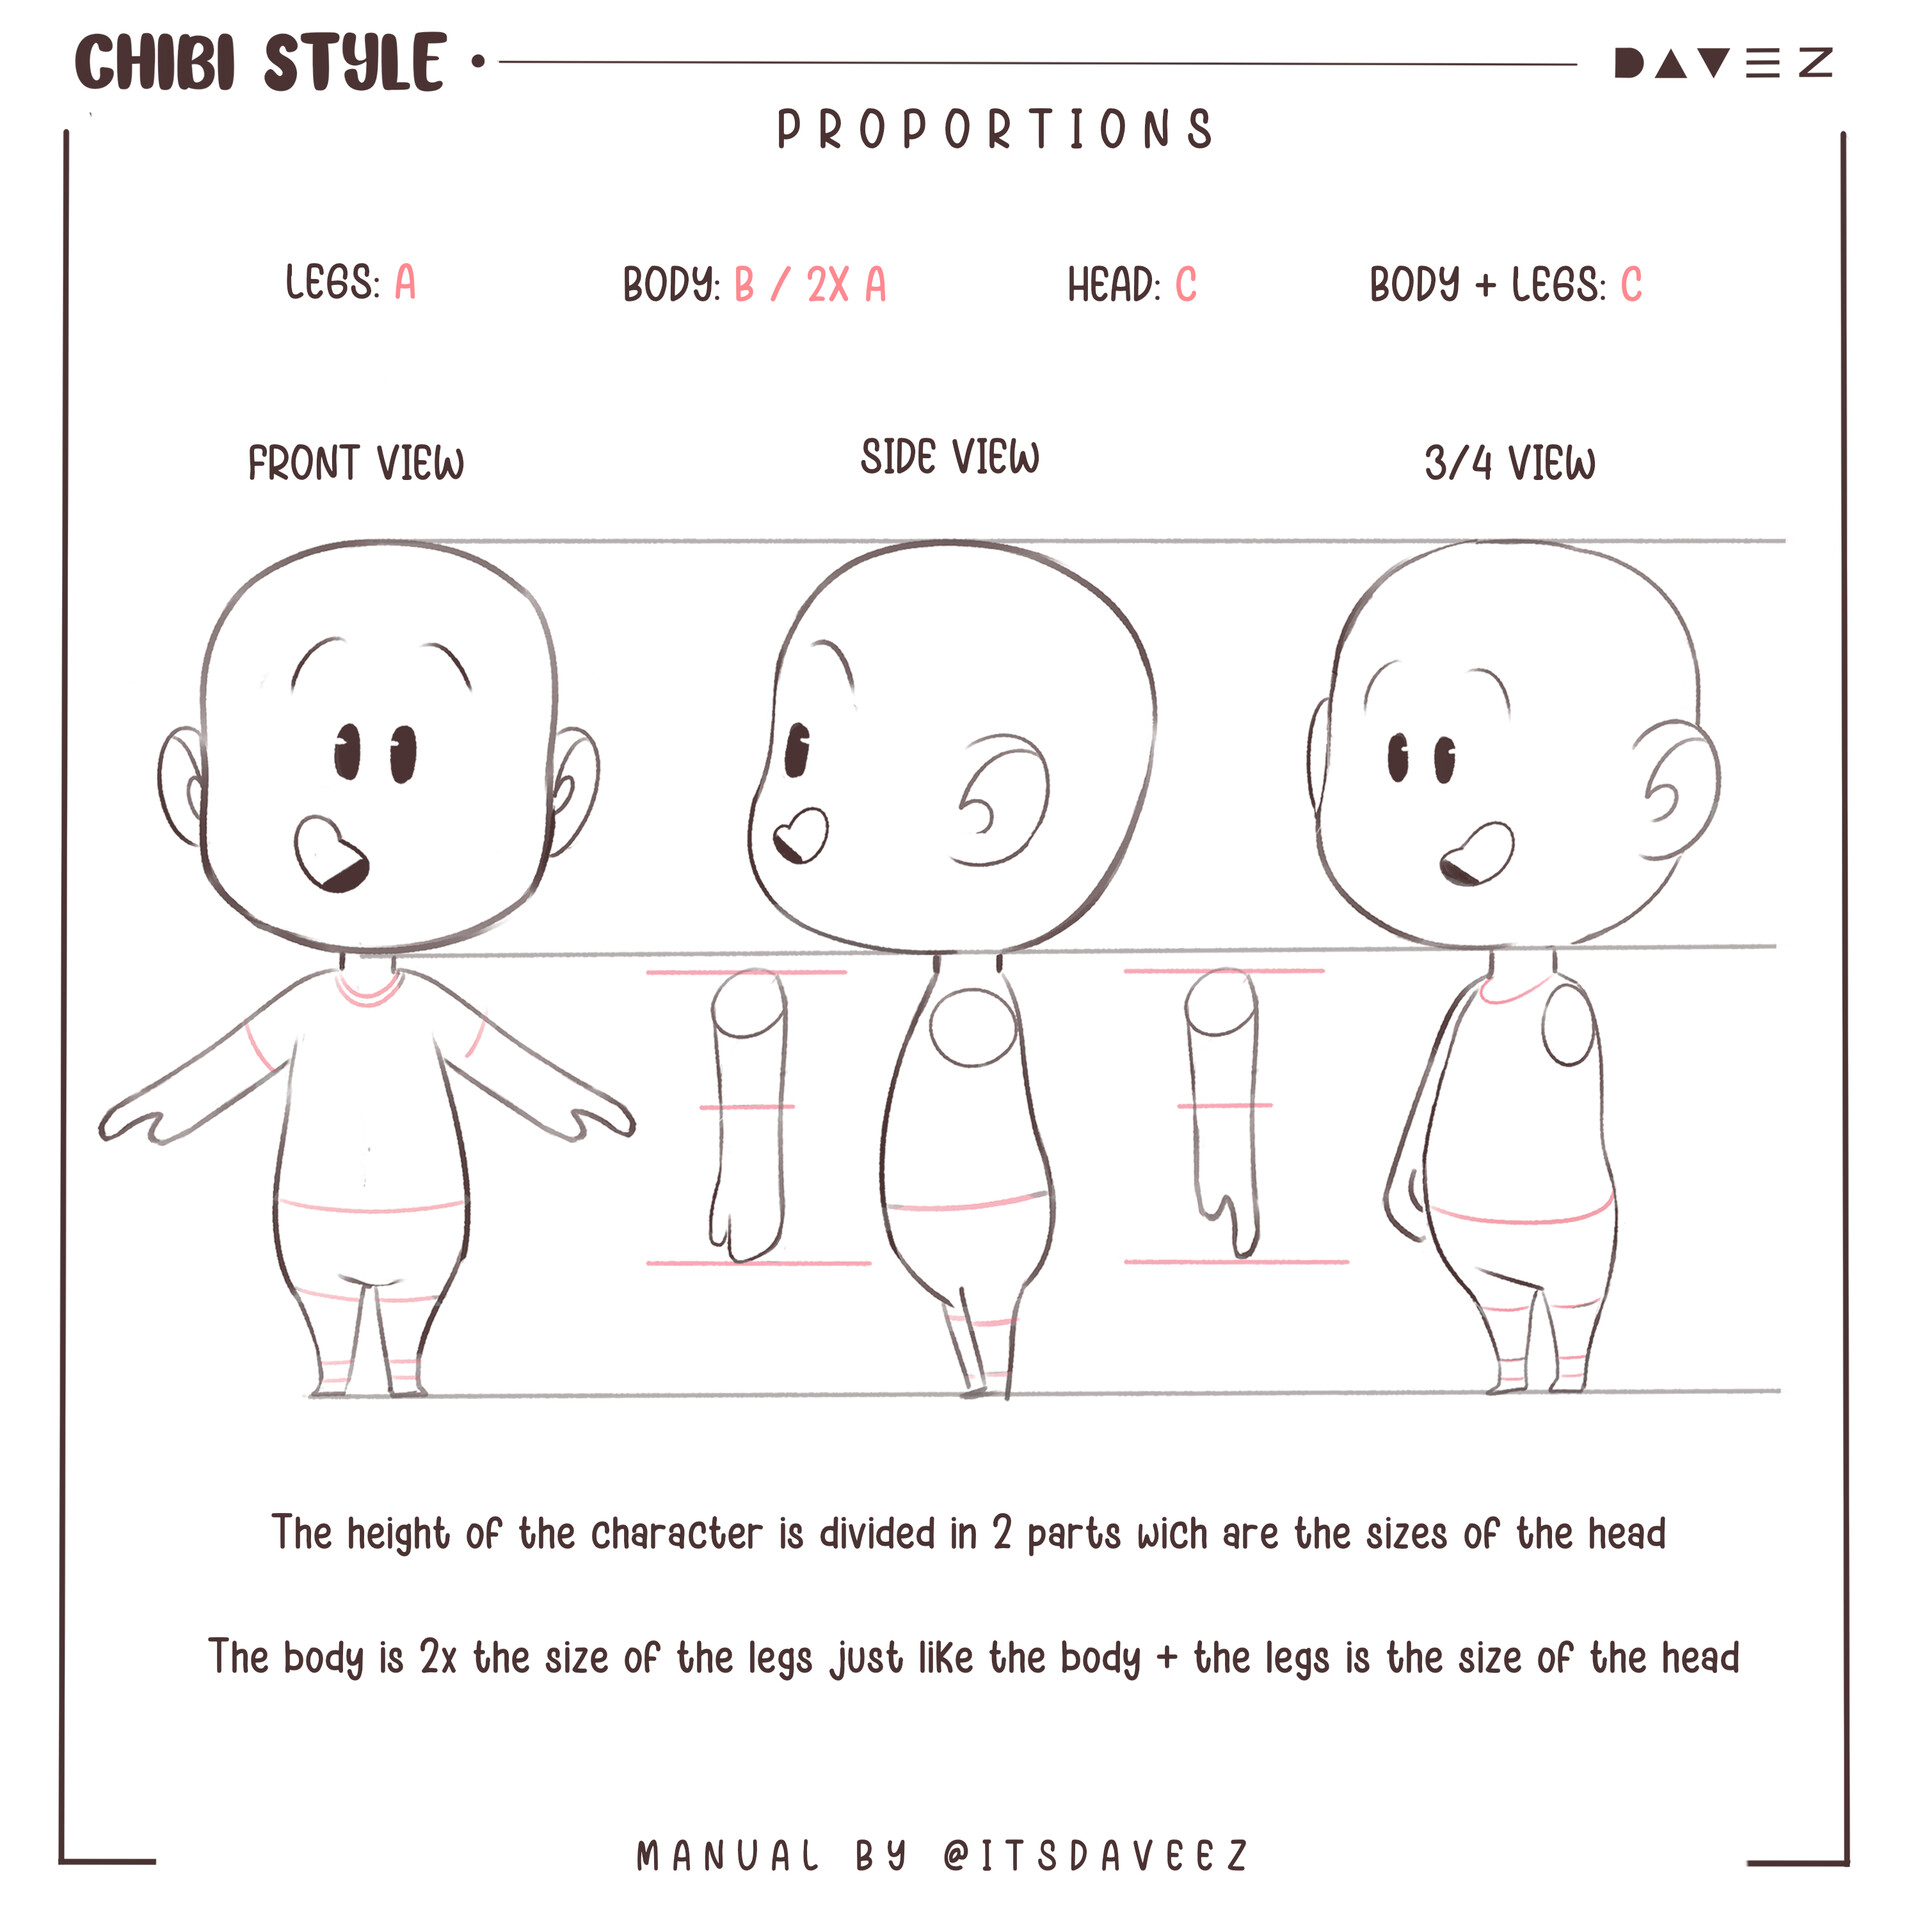 Chibi Style Guide là một tài liệu tuyệt vời cho những ai muốn học cách vẽ Chibi theo nhiều phong cách khác nhau. Với hướng dẫn chi tiết từ Chibi đơn giản đến Chibi phức tạp, bạn sẽ dễ dàng học được những kỹ năng mới và phát triển phong cách vẽ riêng của mình. Nhấp vào hình ảnh để khám phá thêm về Chibi Style Guide và bắt đầu vẽ những chú Chibi đáng yêu ngay hôm nay!